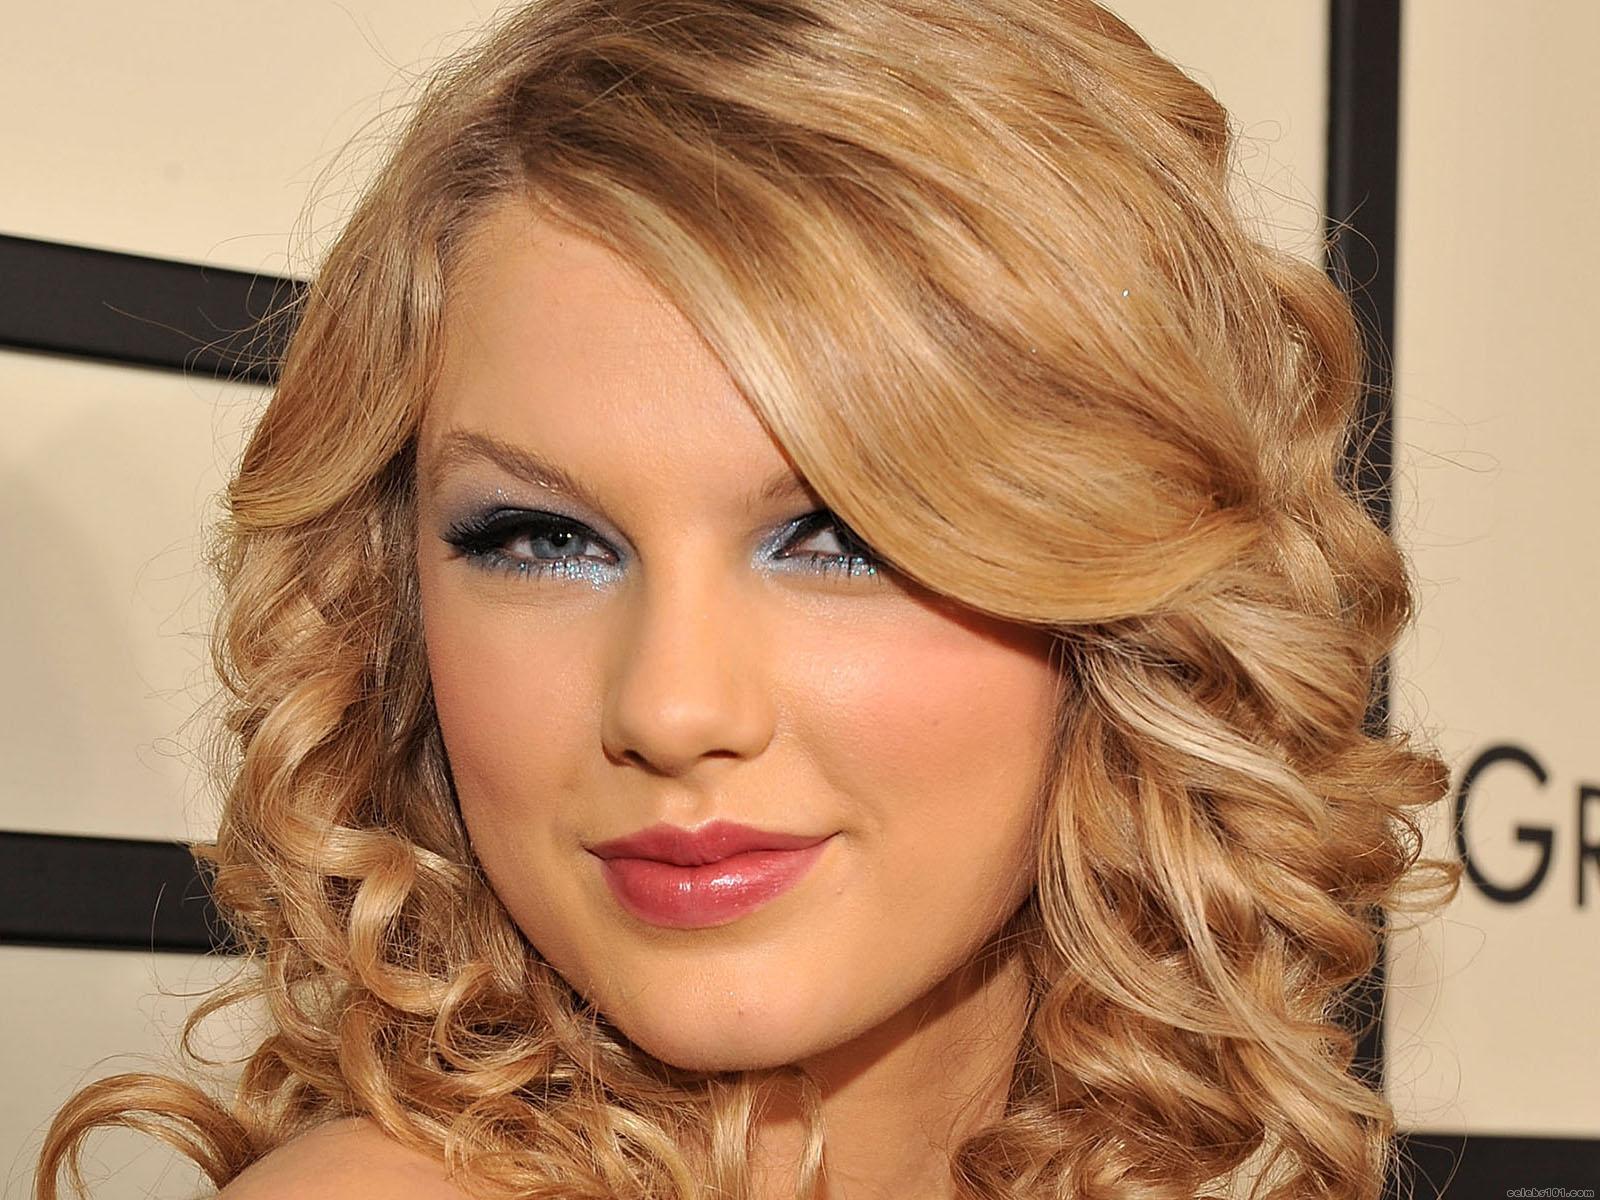 Você Conhece a Taylor Swift? - Respondae